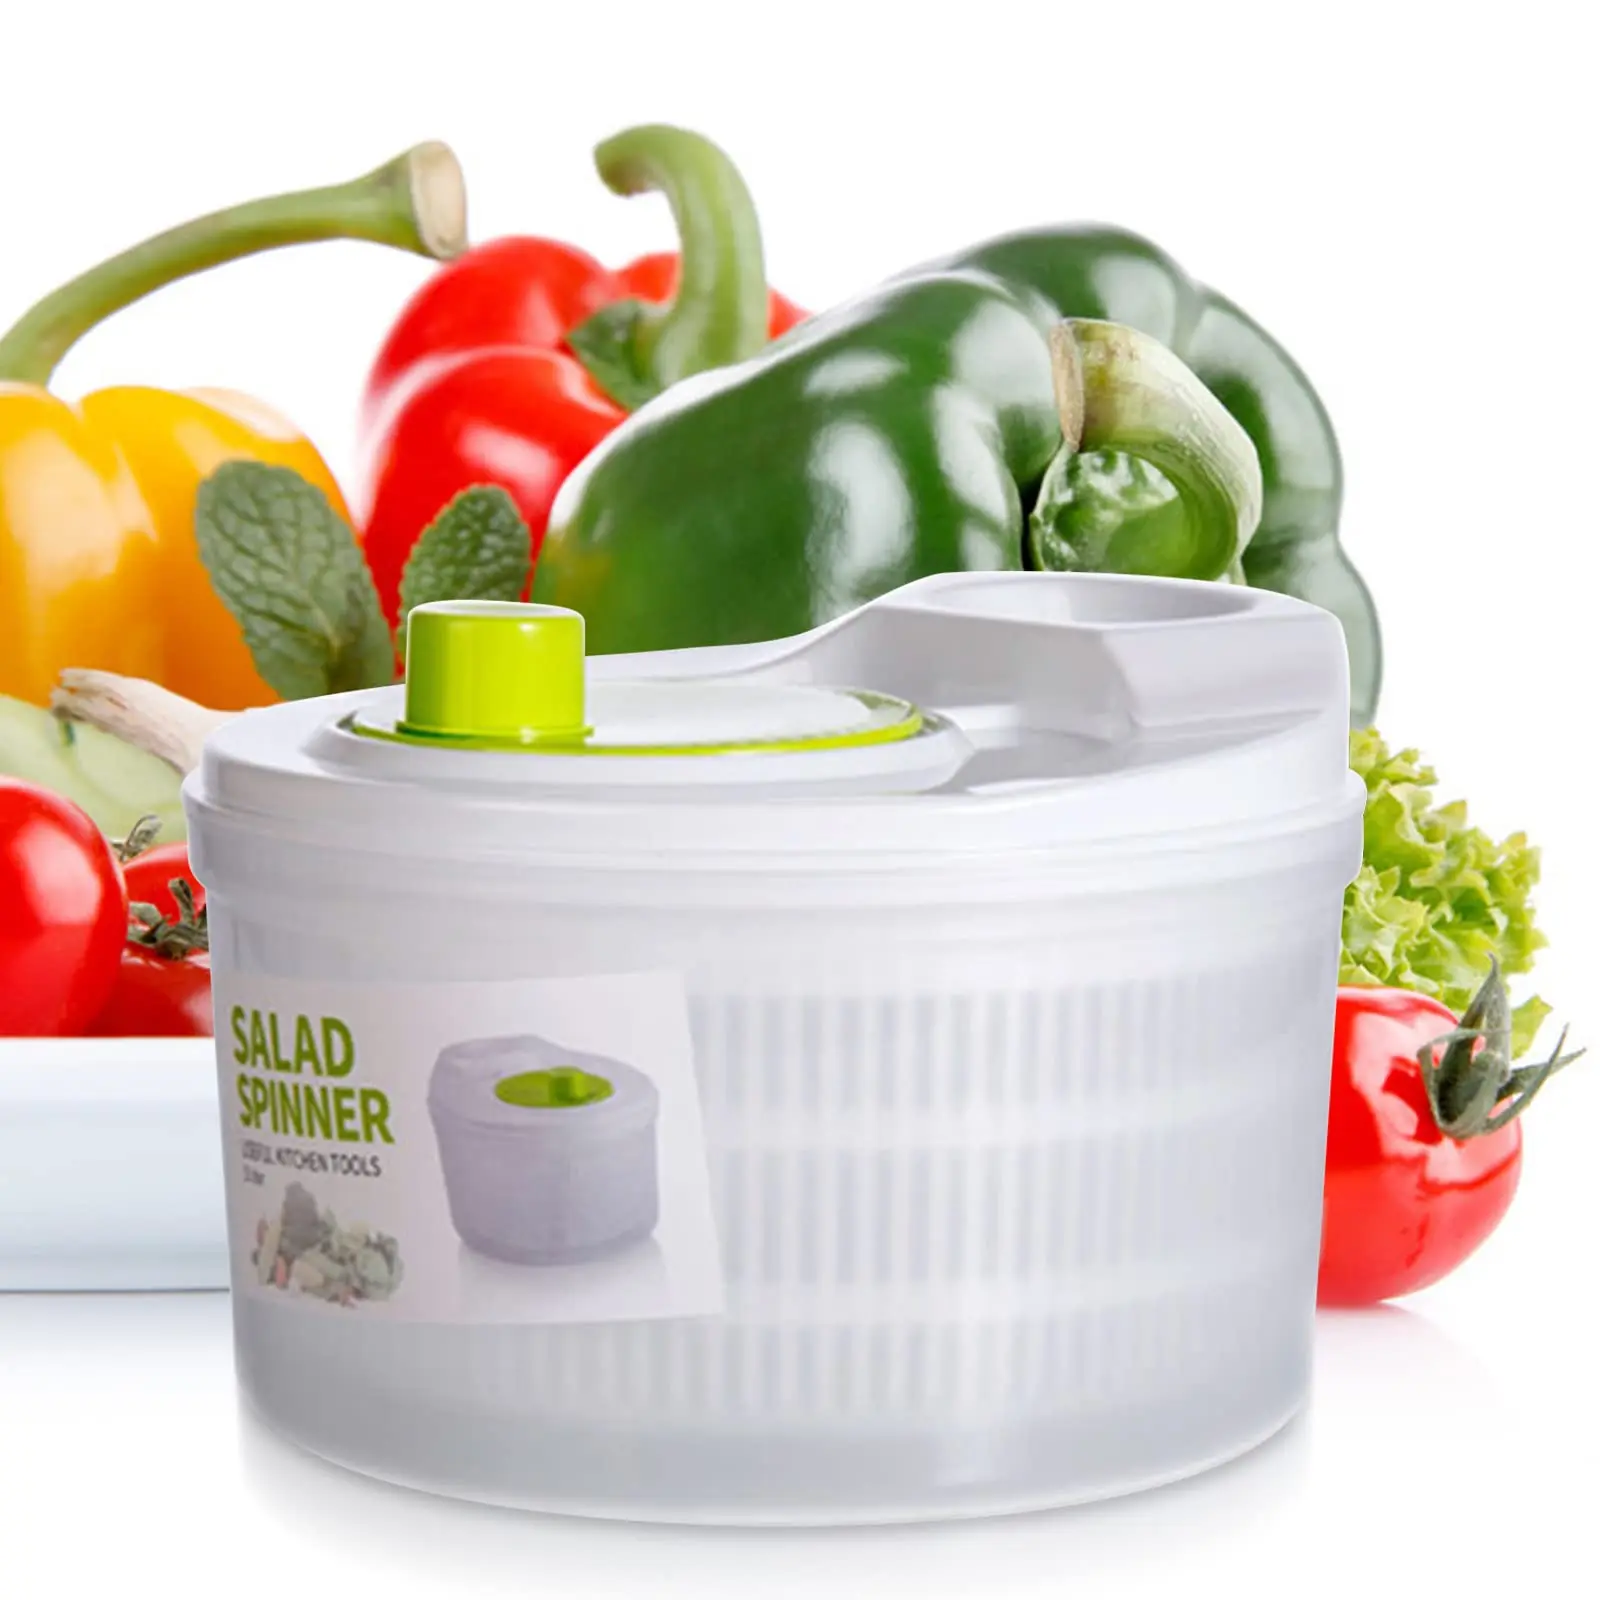 

Аксессуары для салата, складная емкость, мойка для фруктов, овощей, овощей, салата, крышка, сушилка, Спиннер, кухня с салат